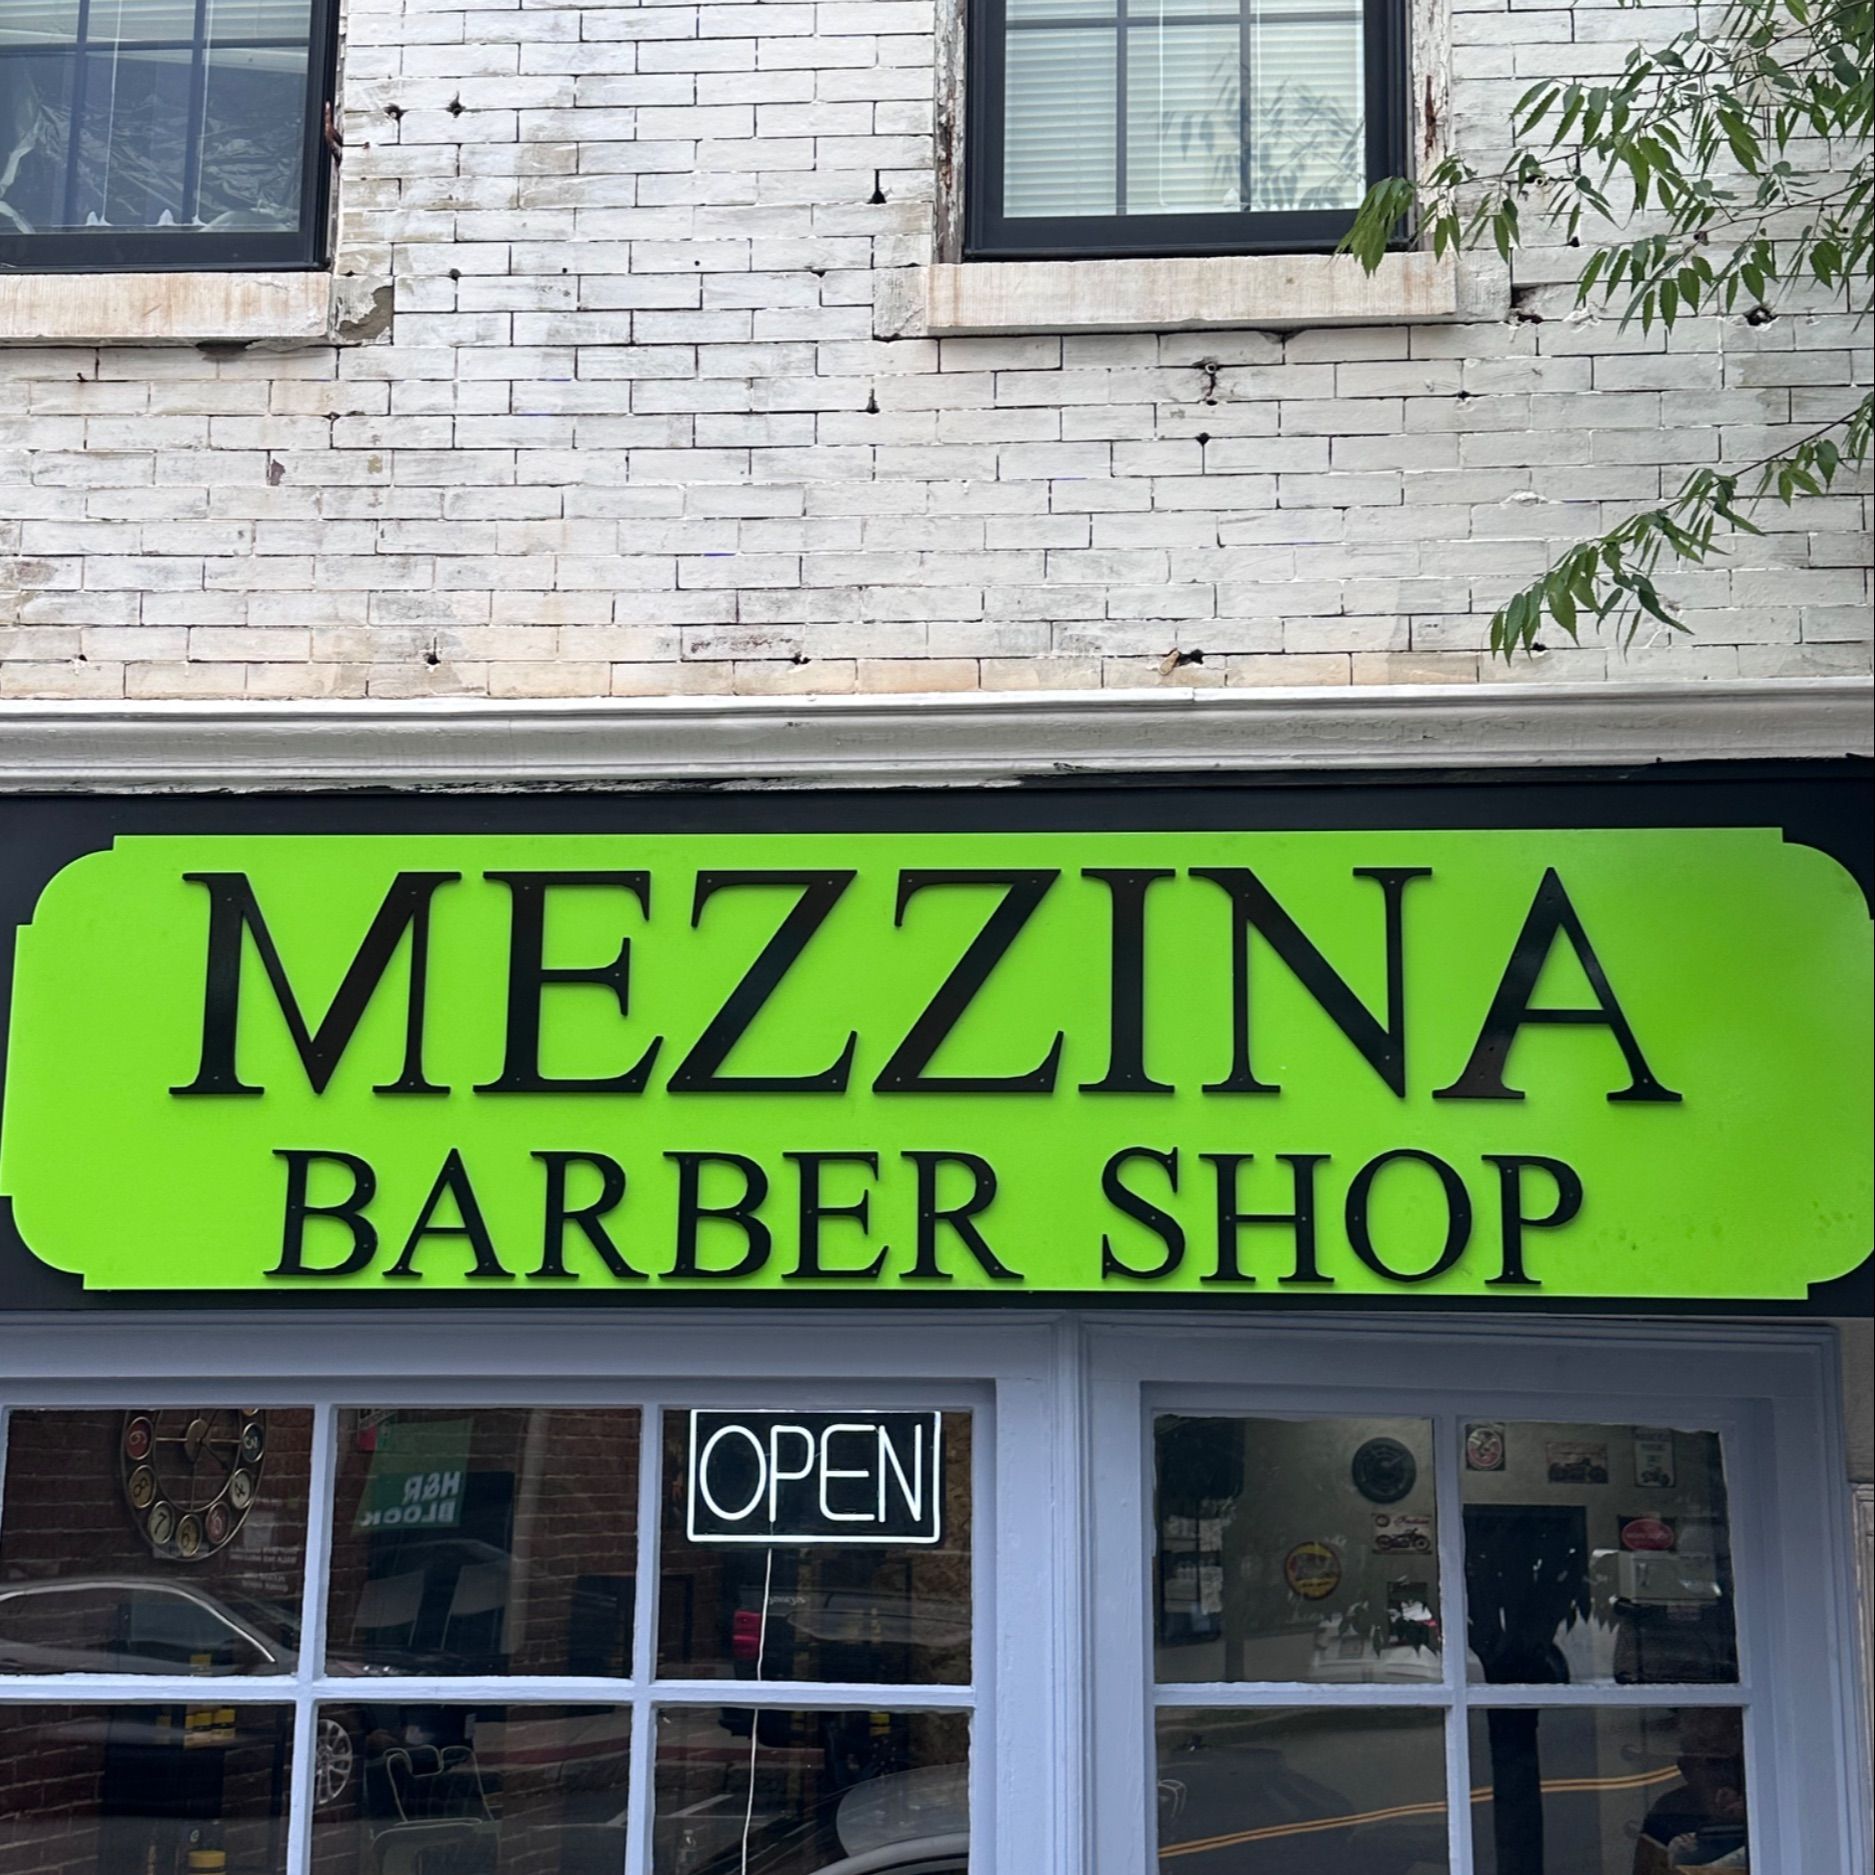 Mezzina Barbershop, 400 Main St, Mezzina, Woburn, 01801